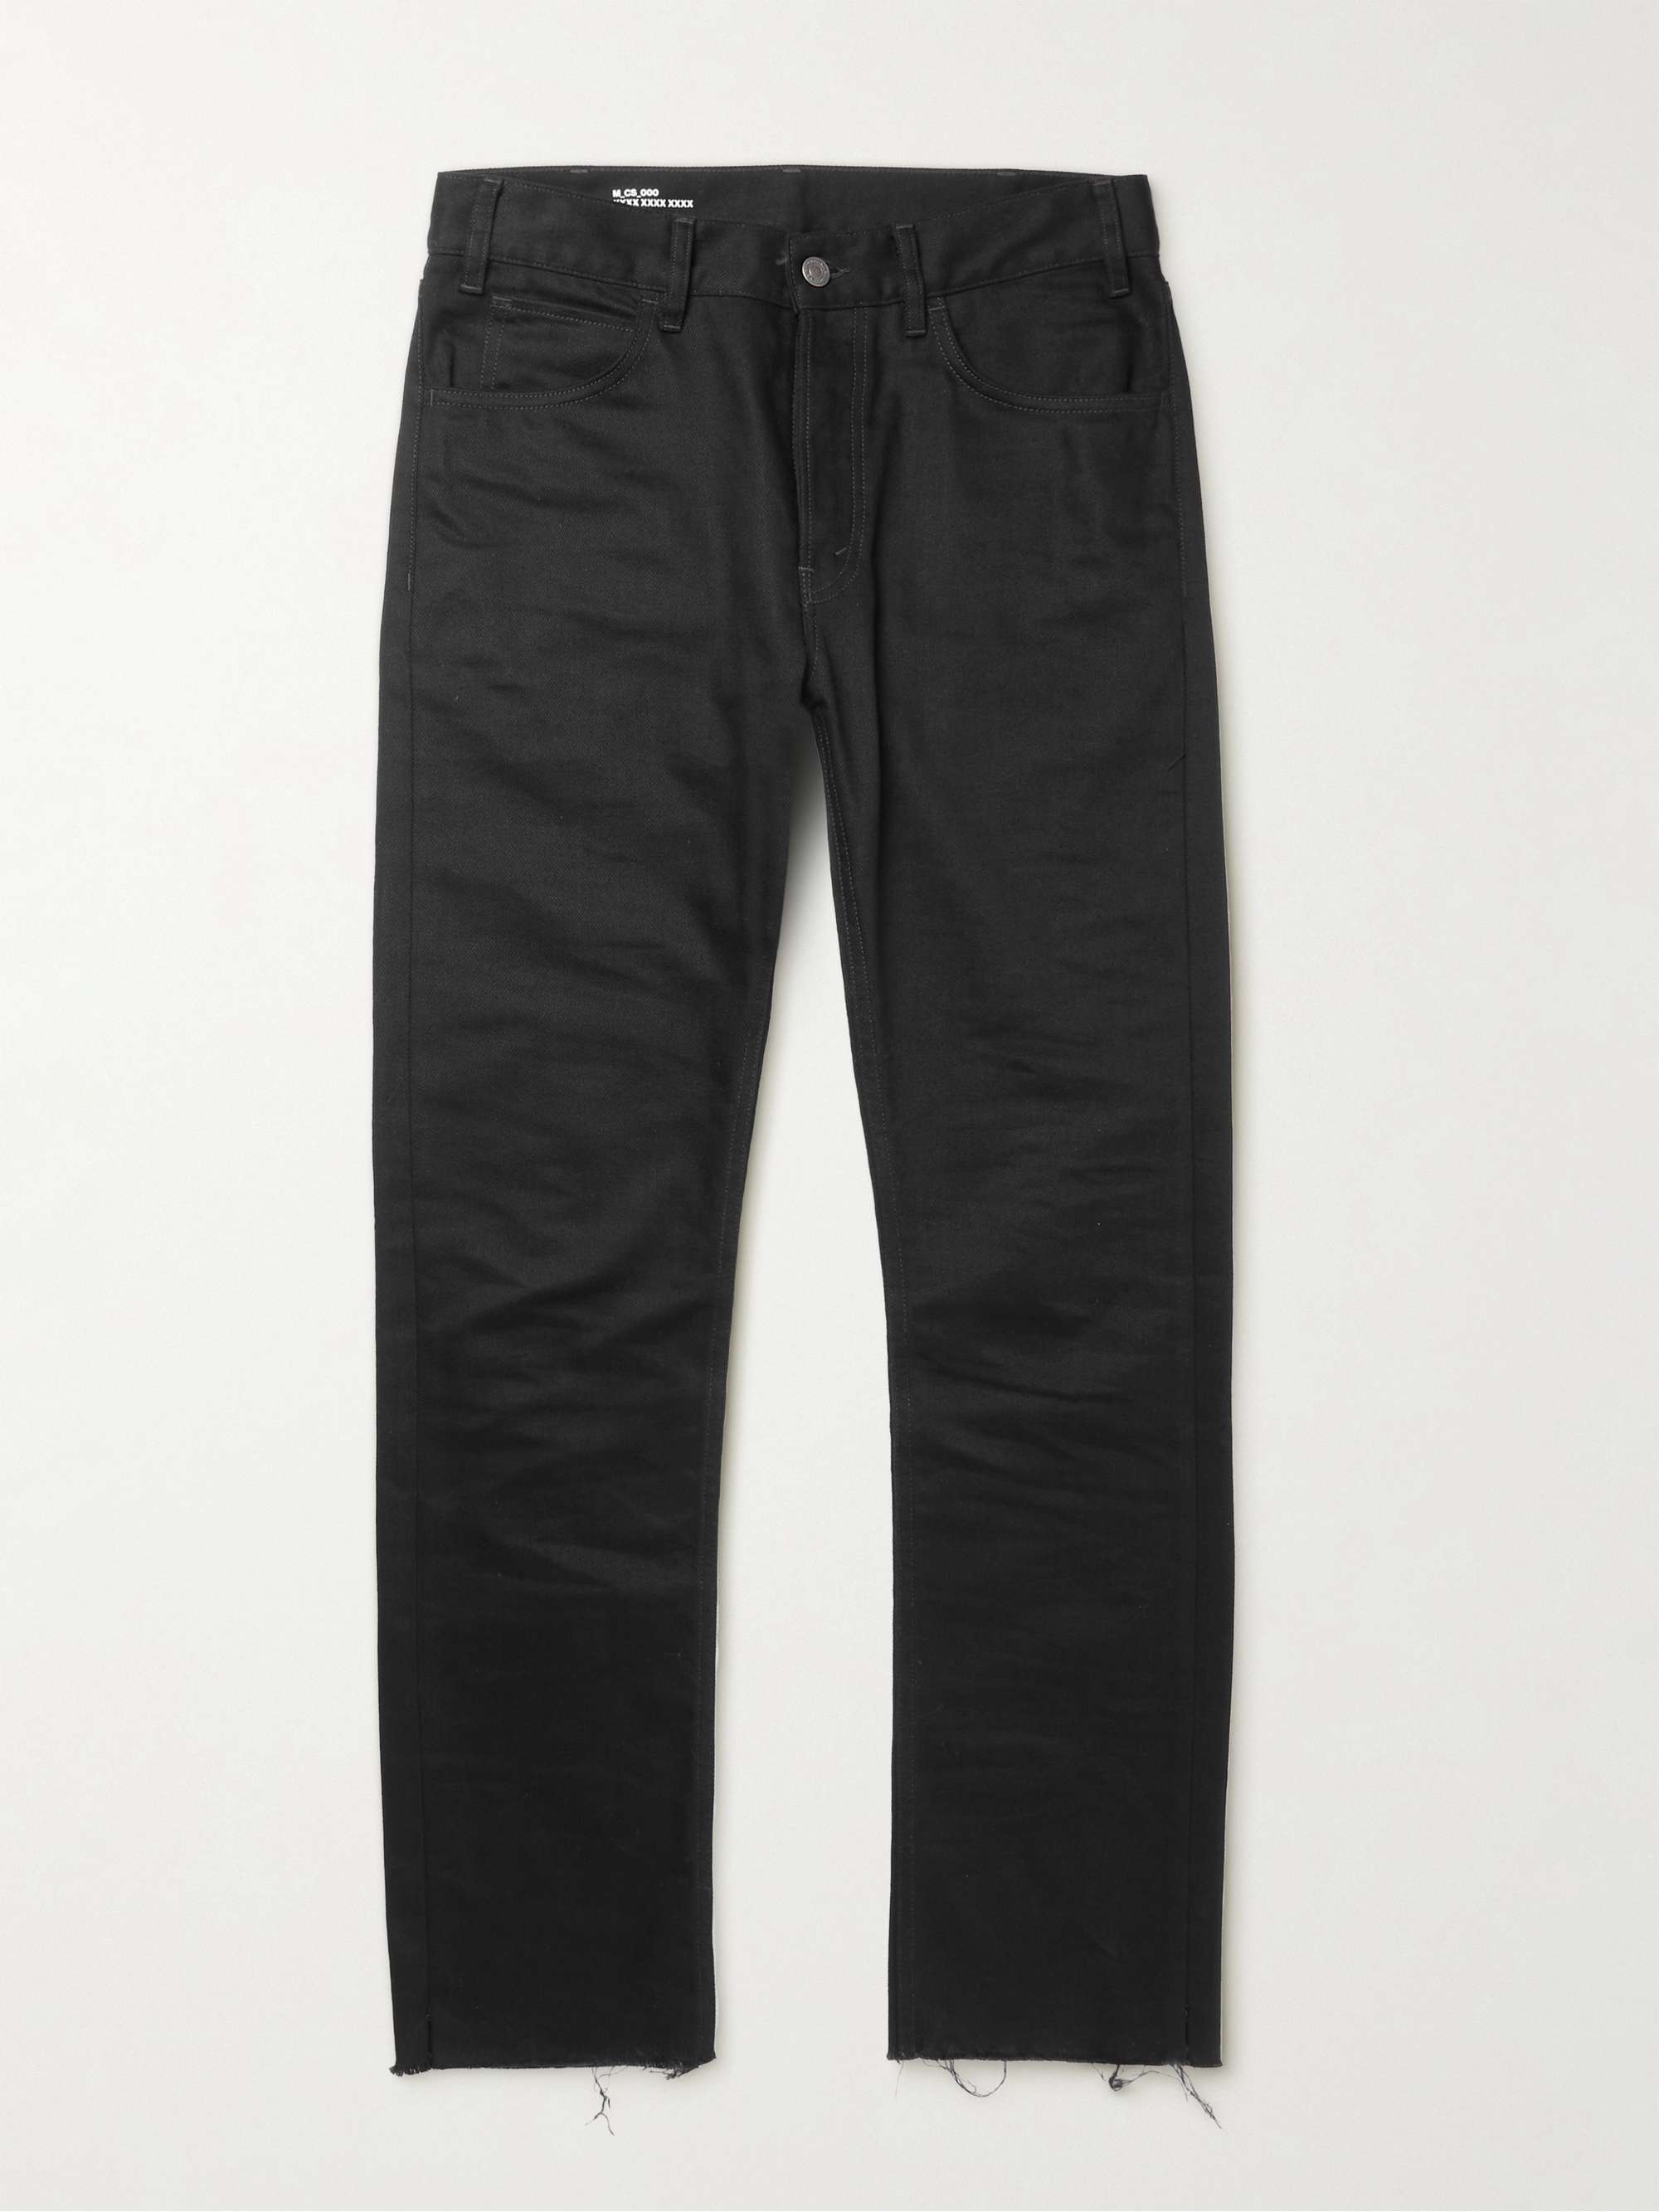 CELINE HOMME Lou Slim-Fit Jeans | MR PORTER